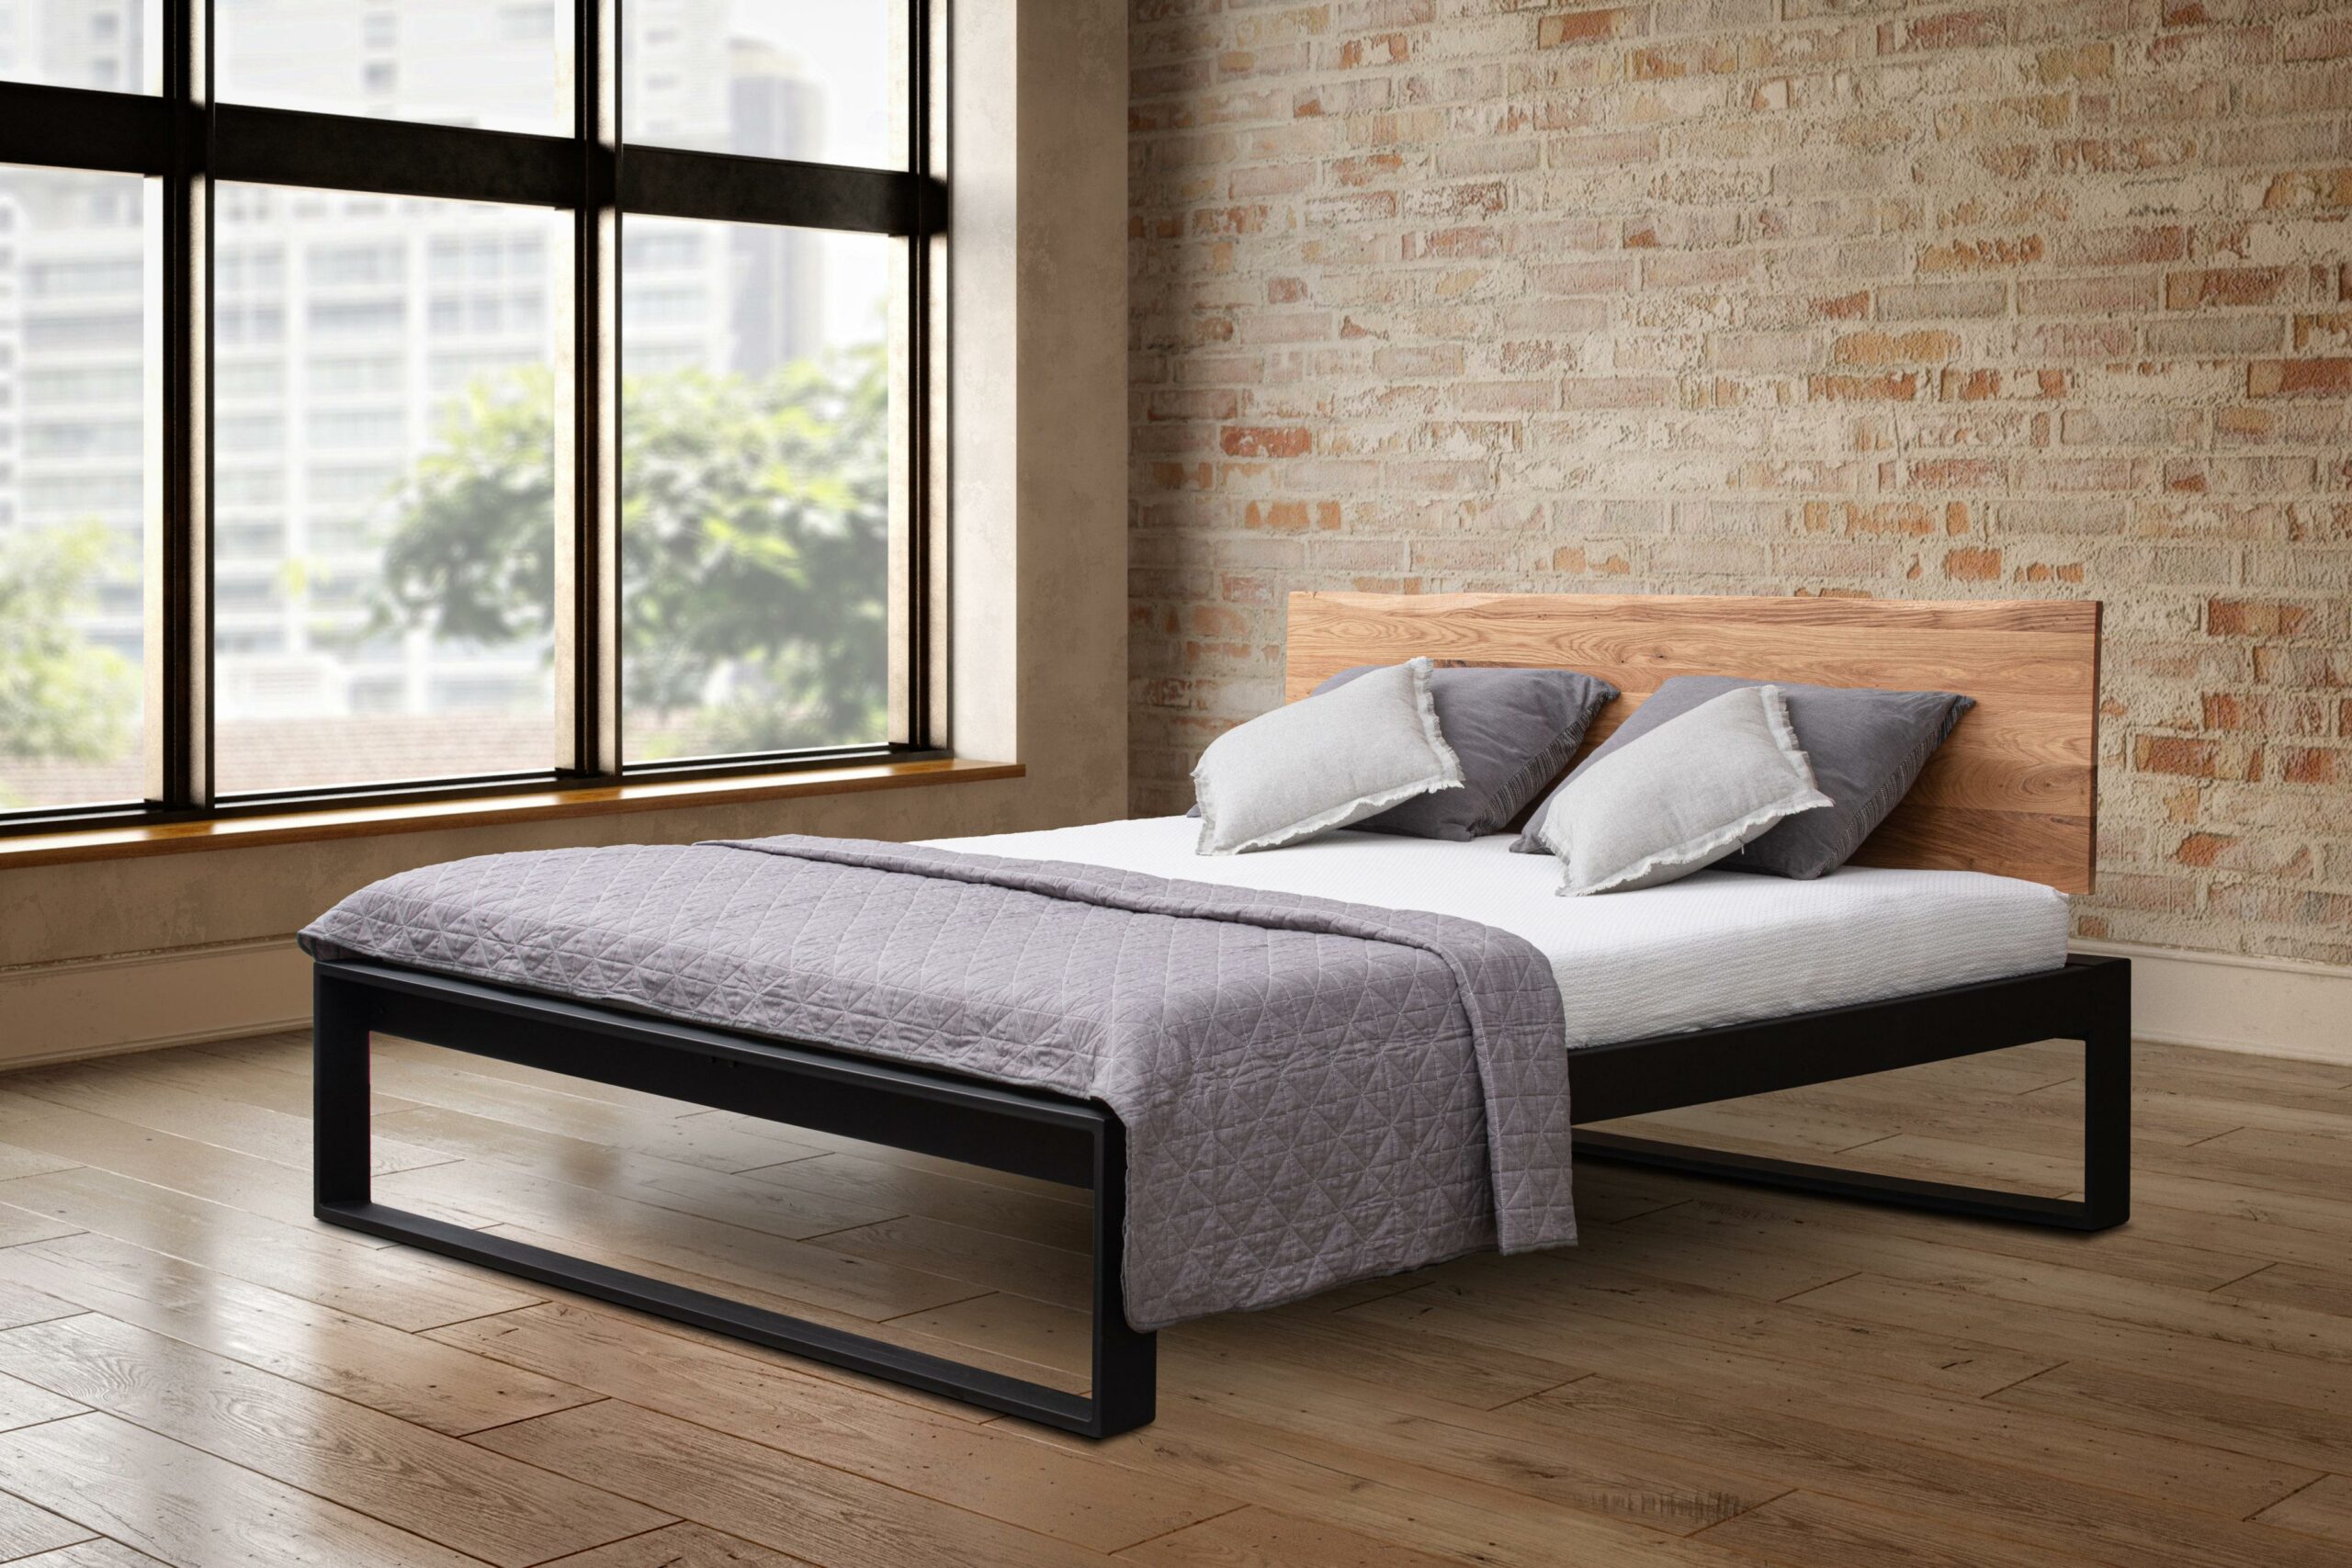 Dubová masivní postel Tara v kombinaci s kovem - manželské postele masiv